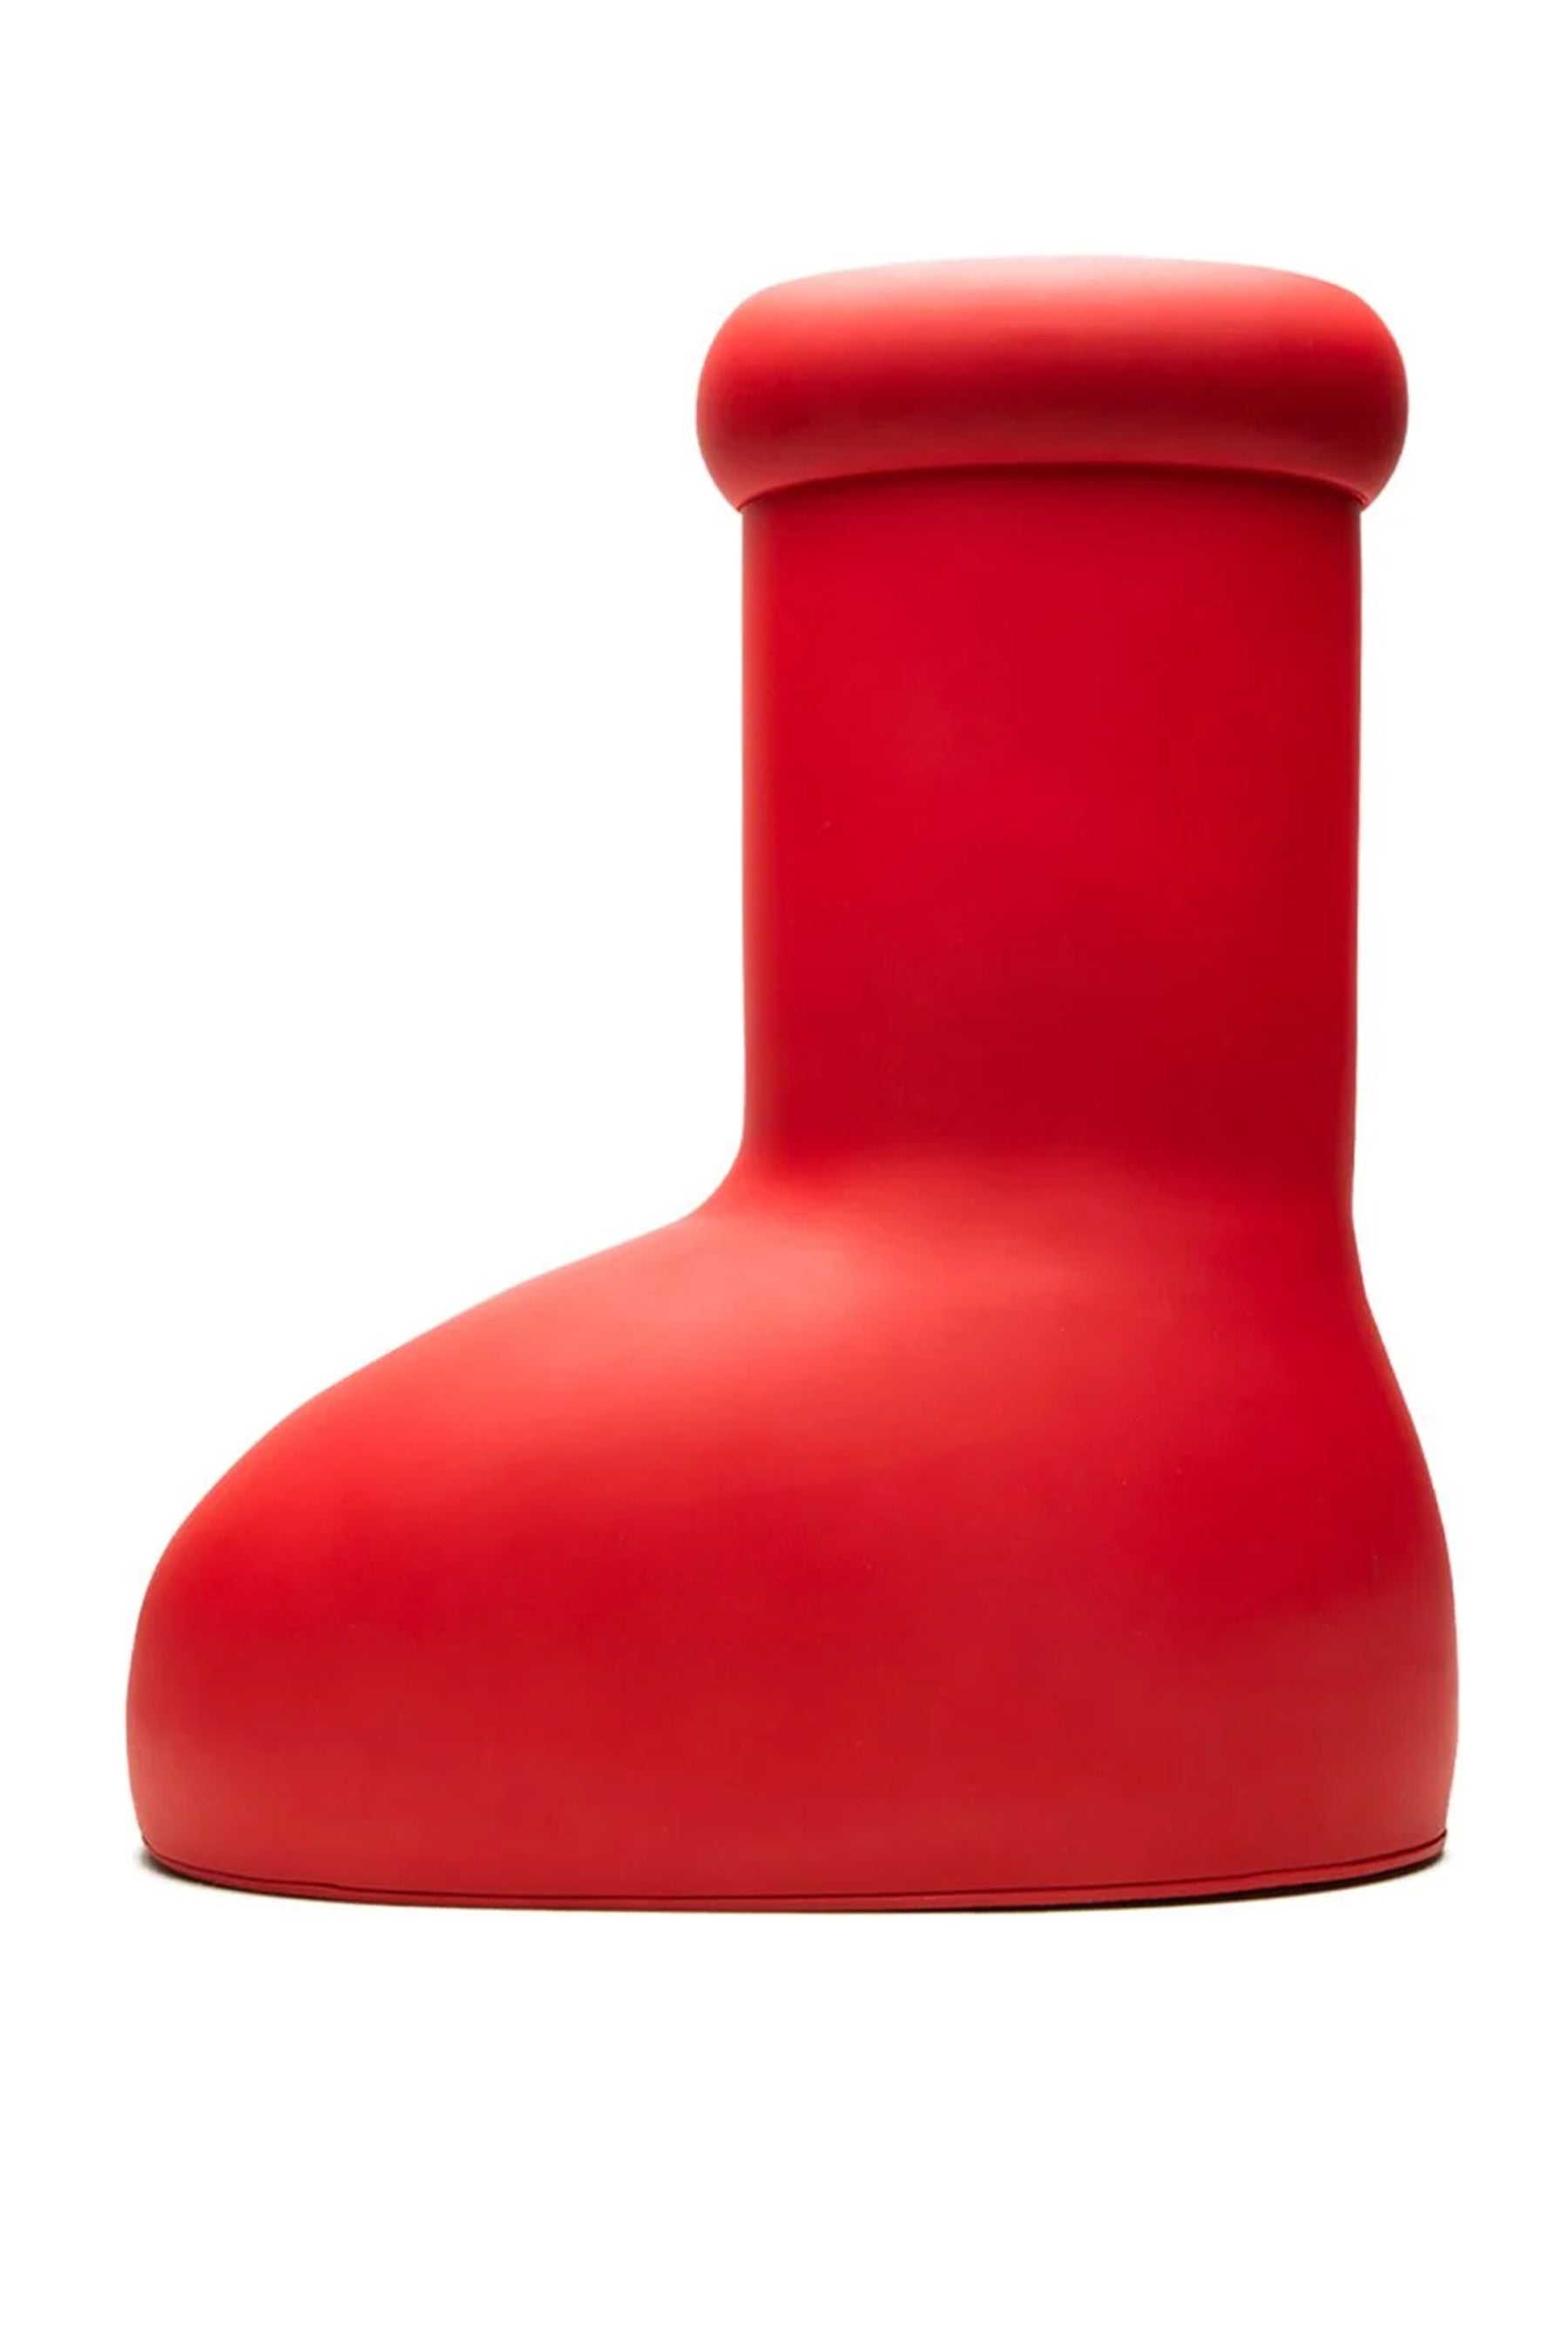 MSCHF X CROCS BIG RED BOOT (YELLOW) 24cm